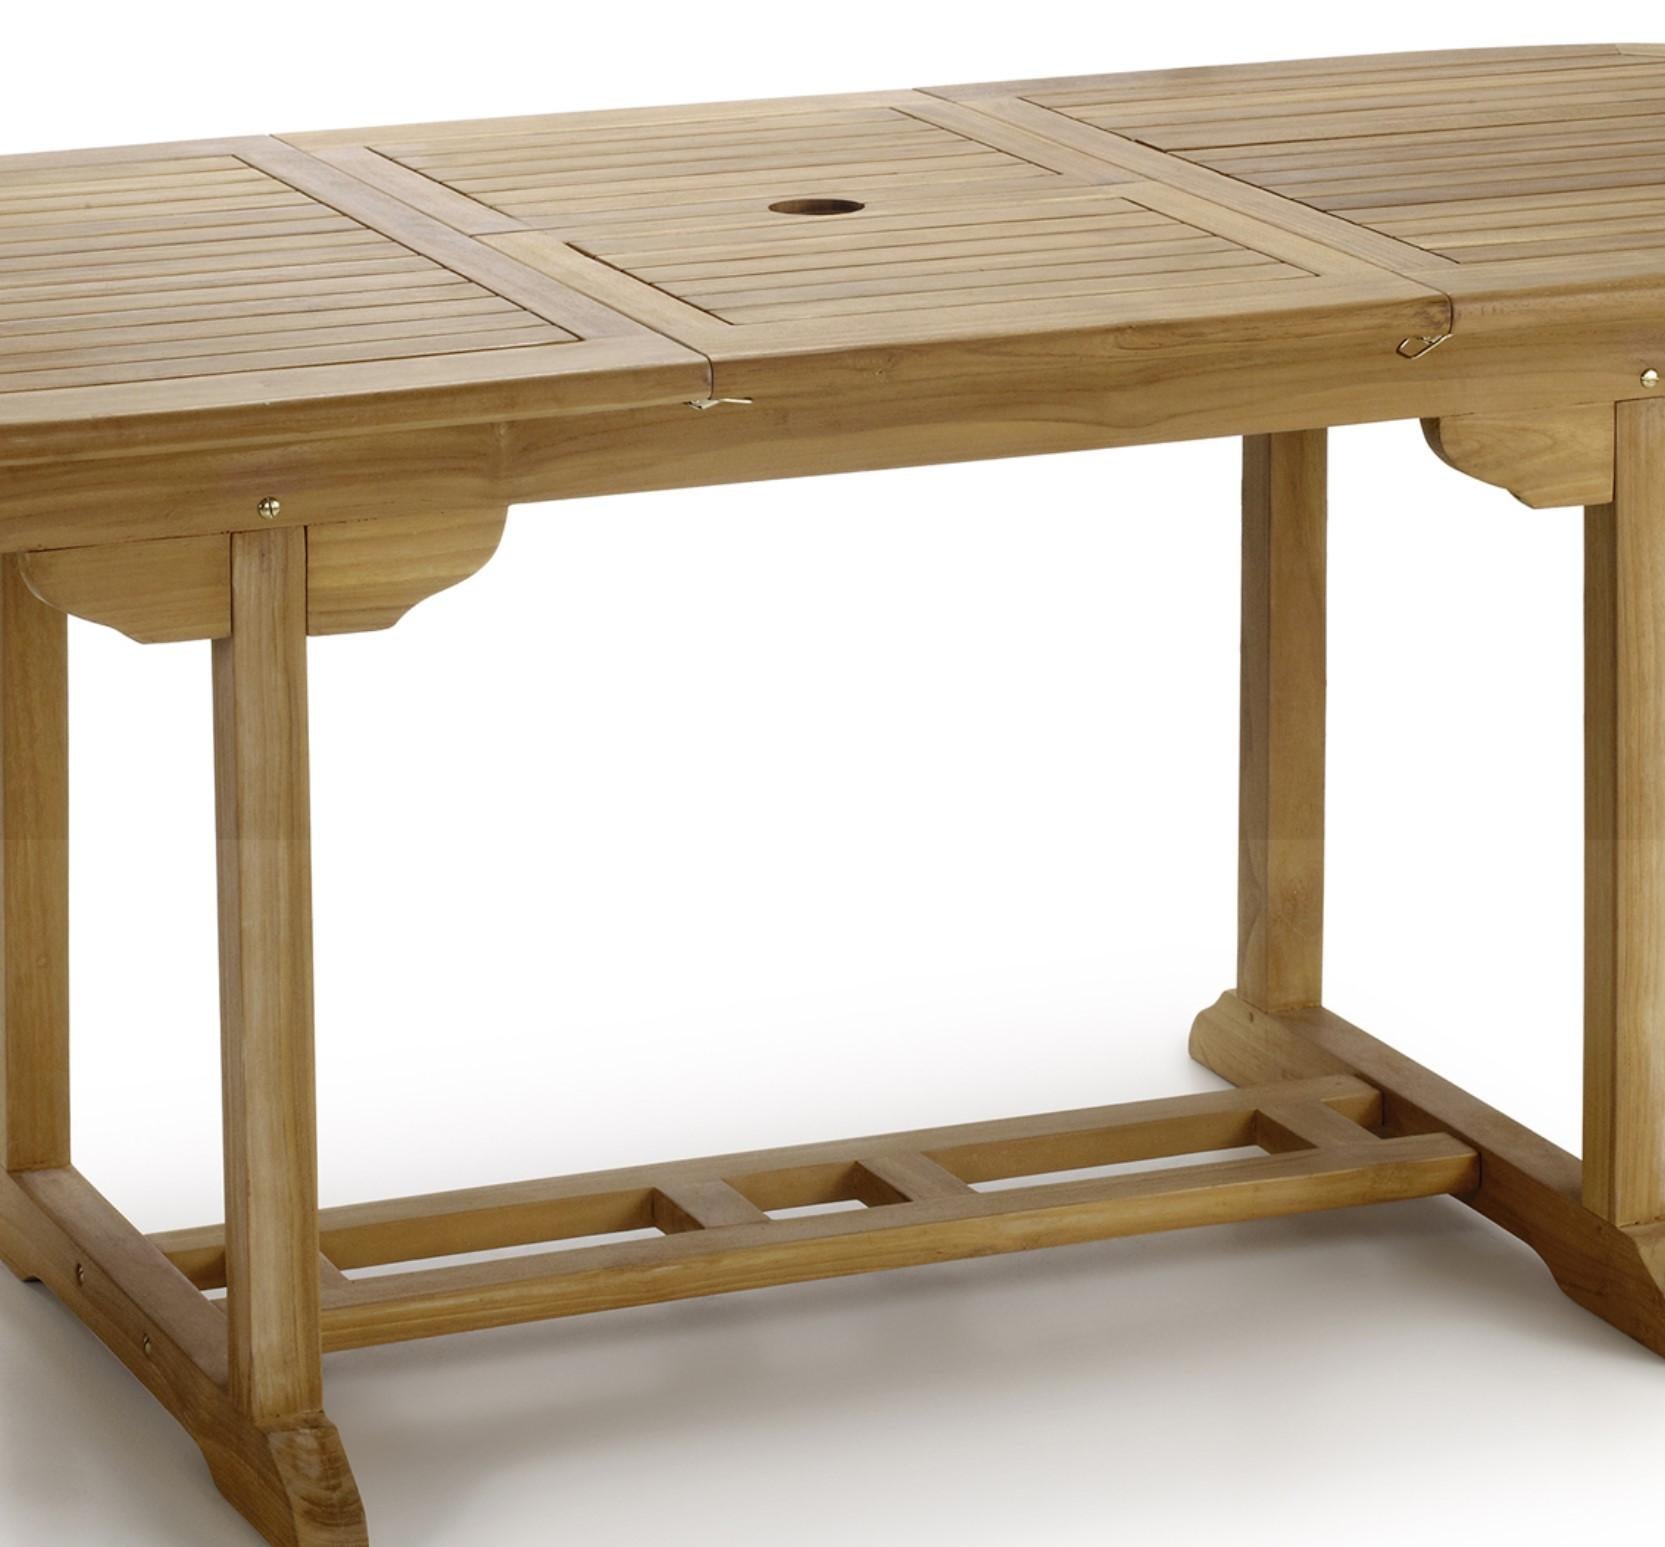 Nouvelle table à manger ovale pliable en teck, pour l'intérieur et l'extérieur

Extensible : 66.92in-86.61in.